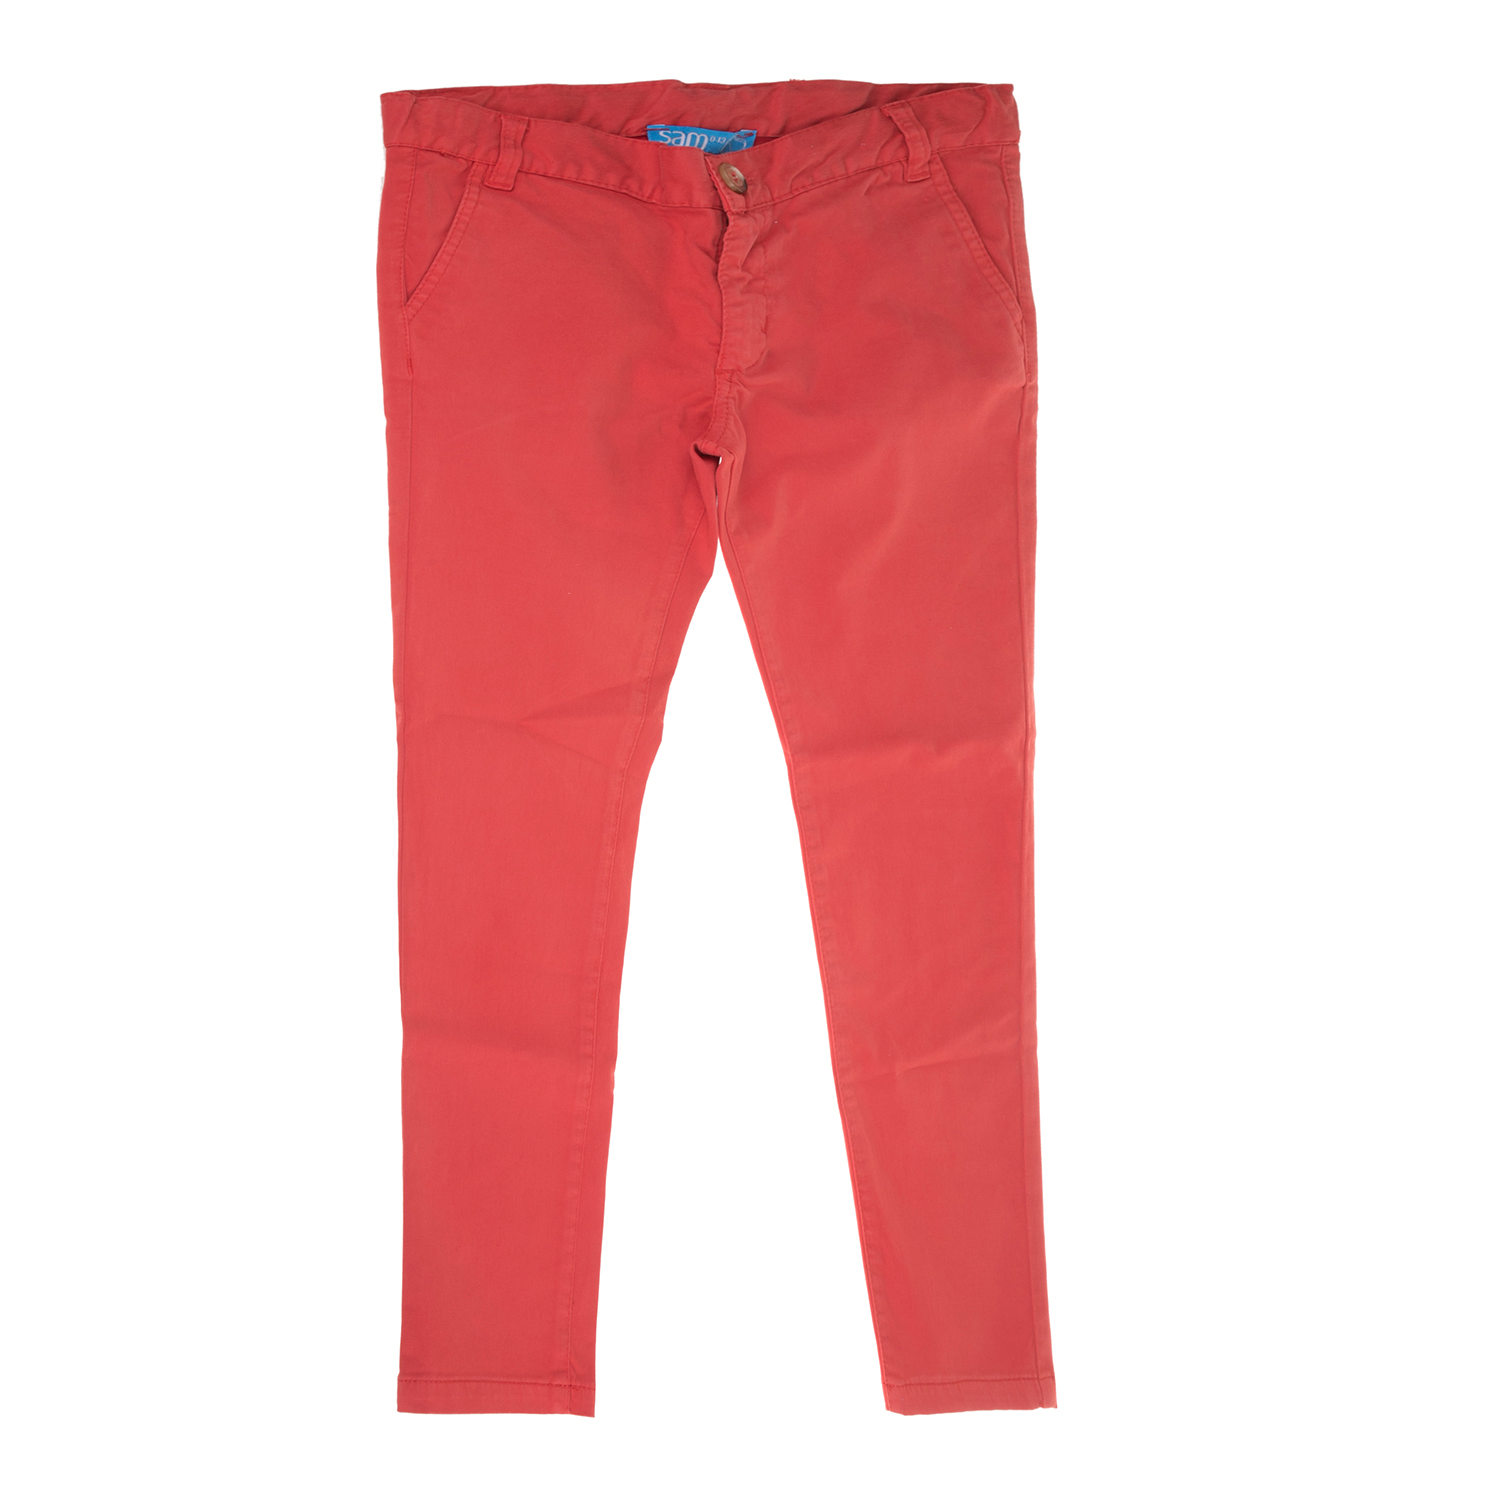 Παιδικά/Boys/Ρούχα/Παντελόνια SAM 0-13 - Παιδικό παντελόνι για μεγάλα αγόρια SAM 0-13 κόκκινο